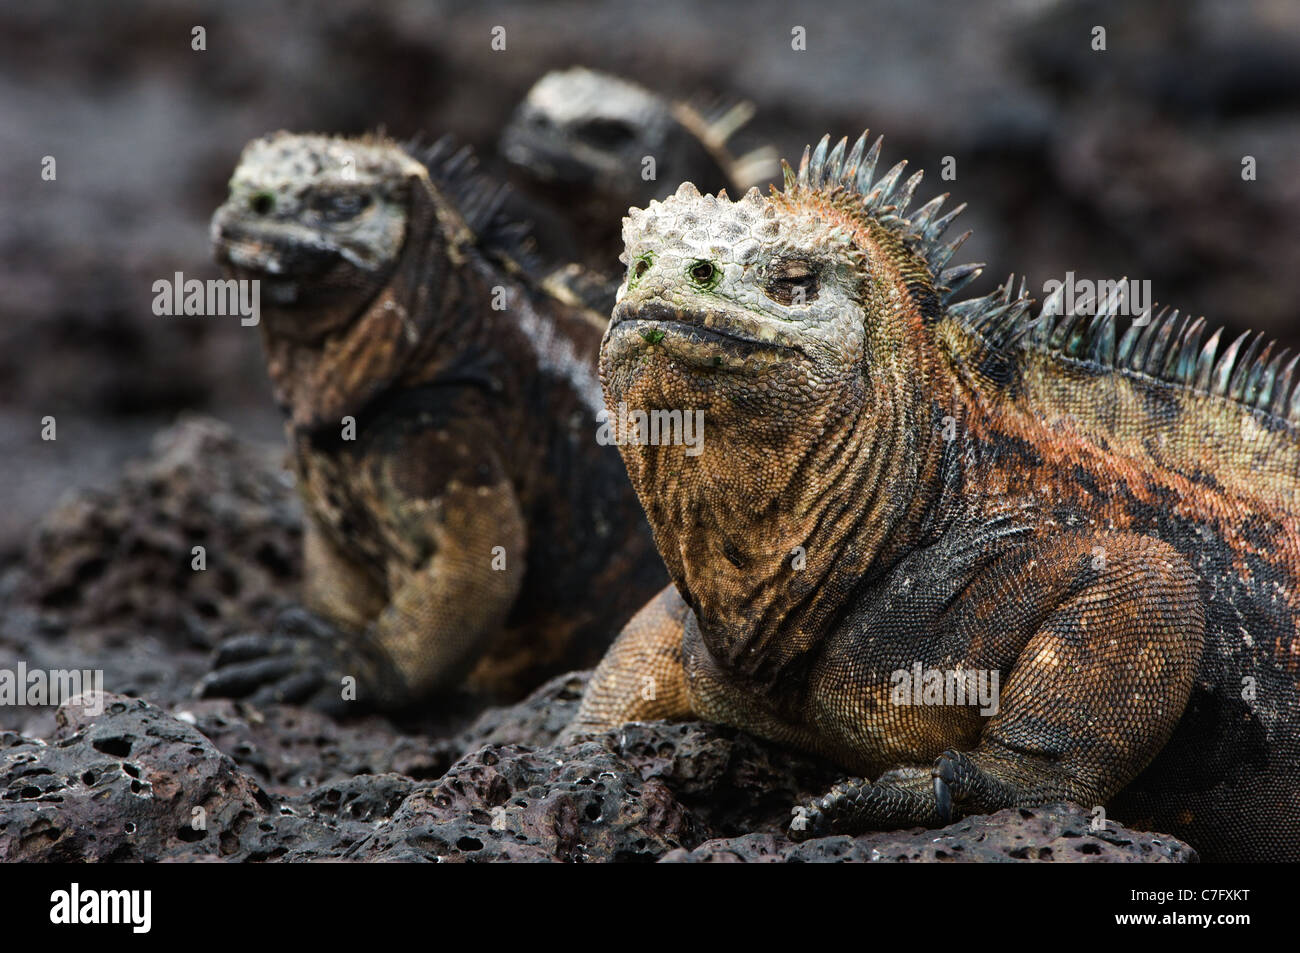 The marine iguana poses on the black stiffened lava. Stock Photo